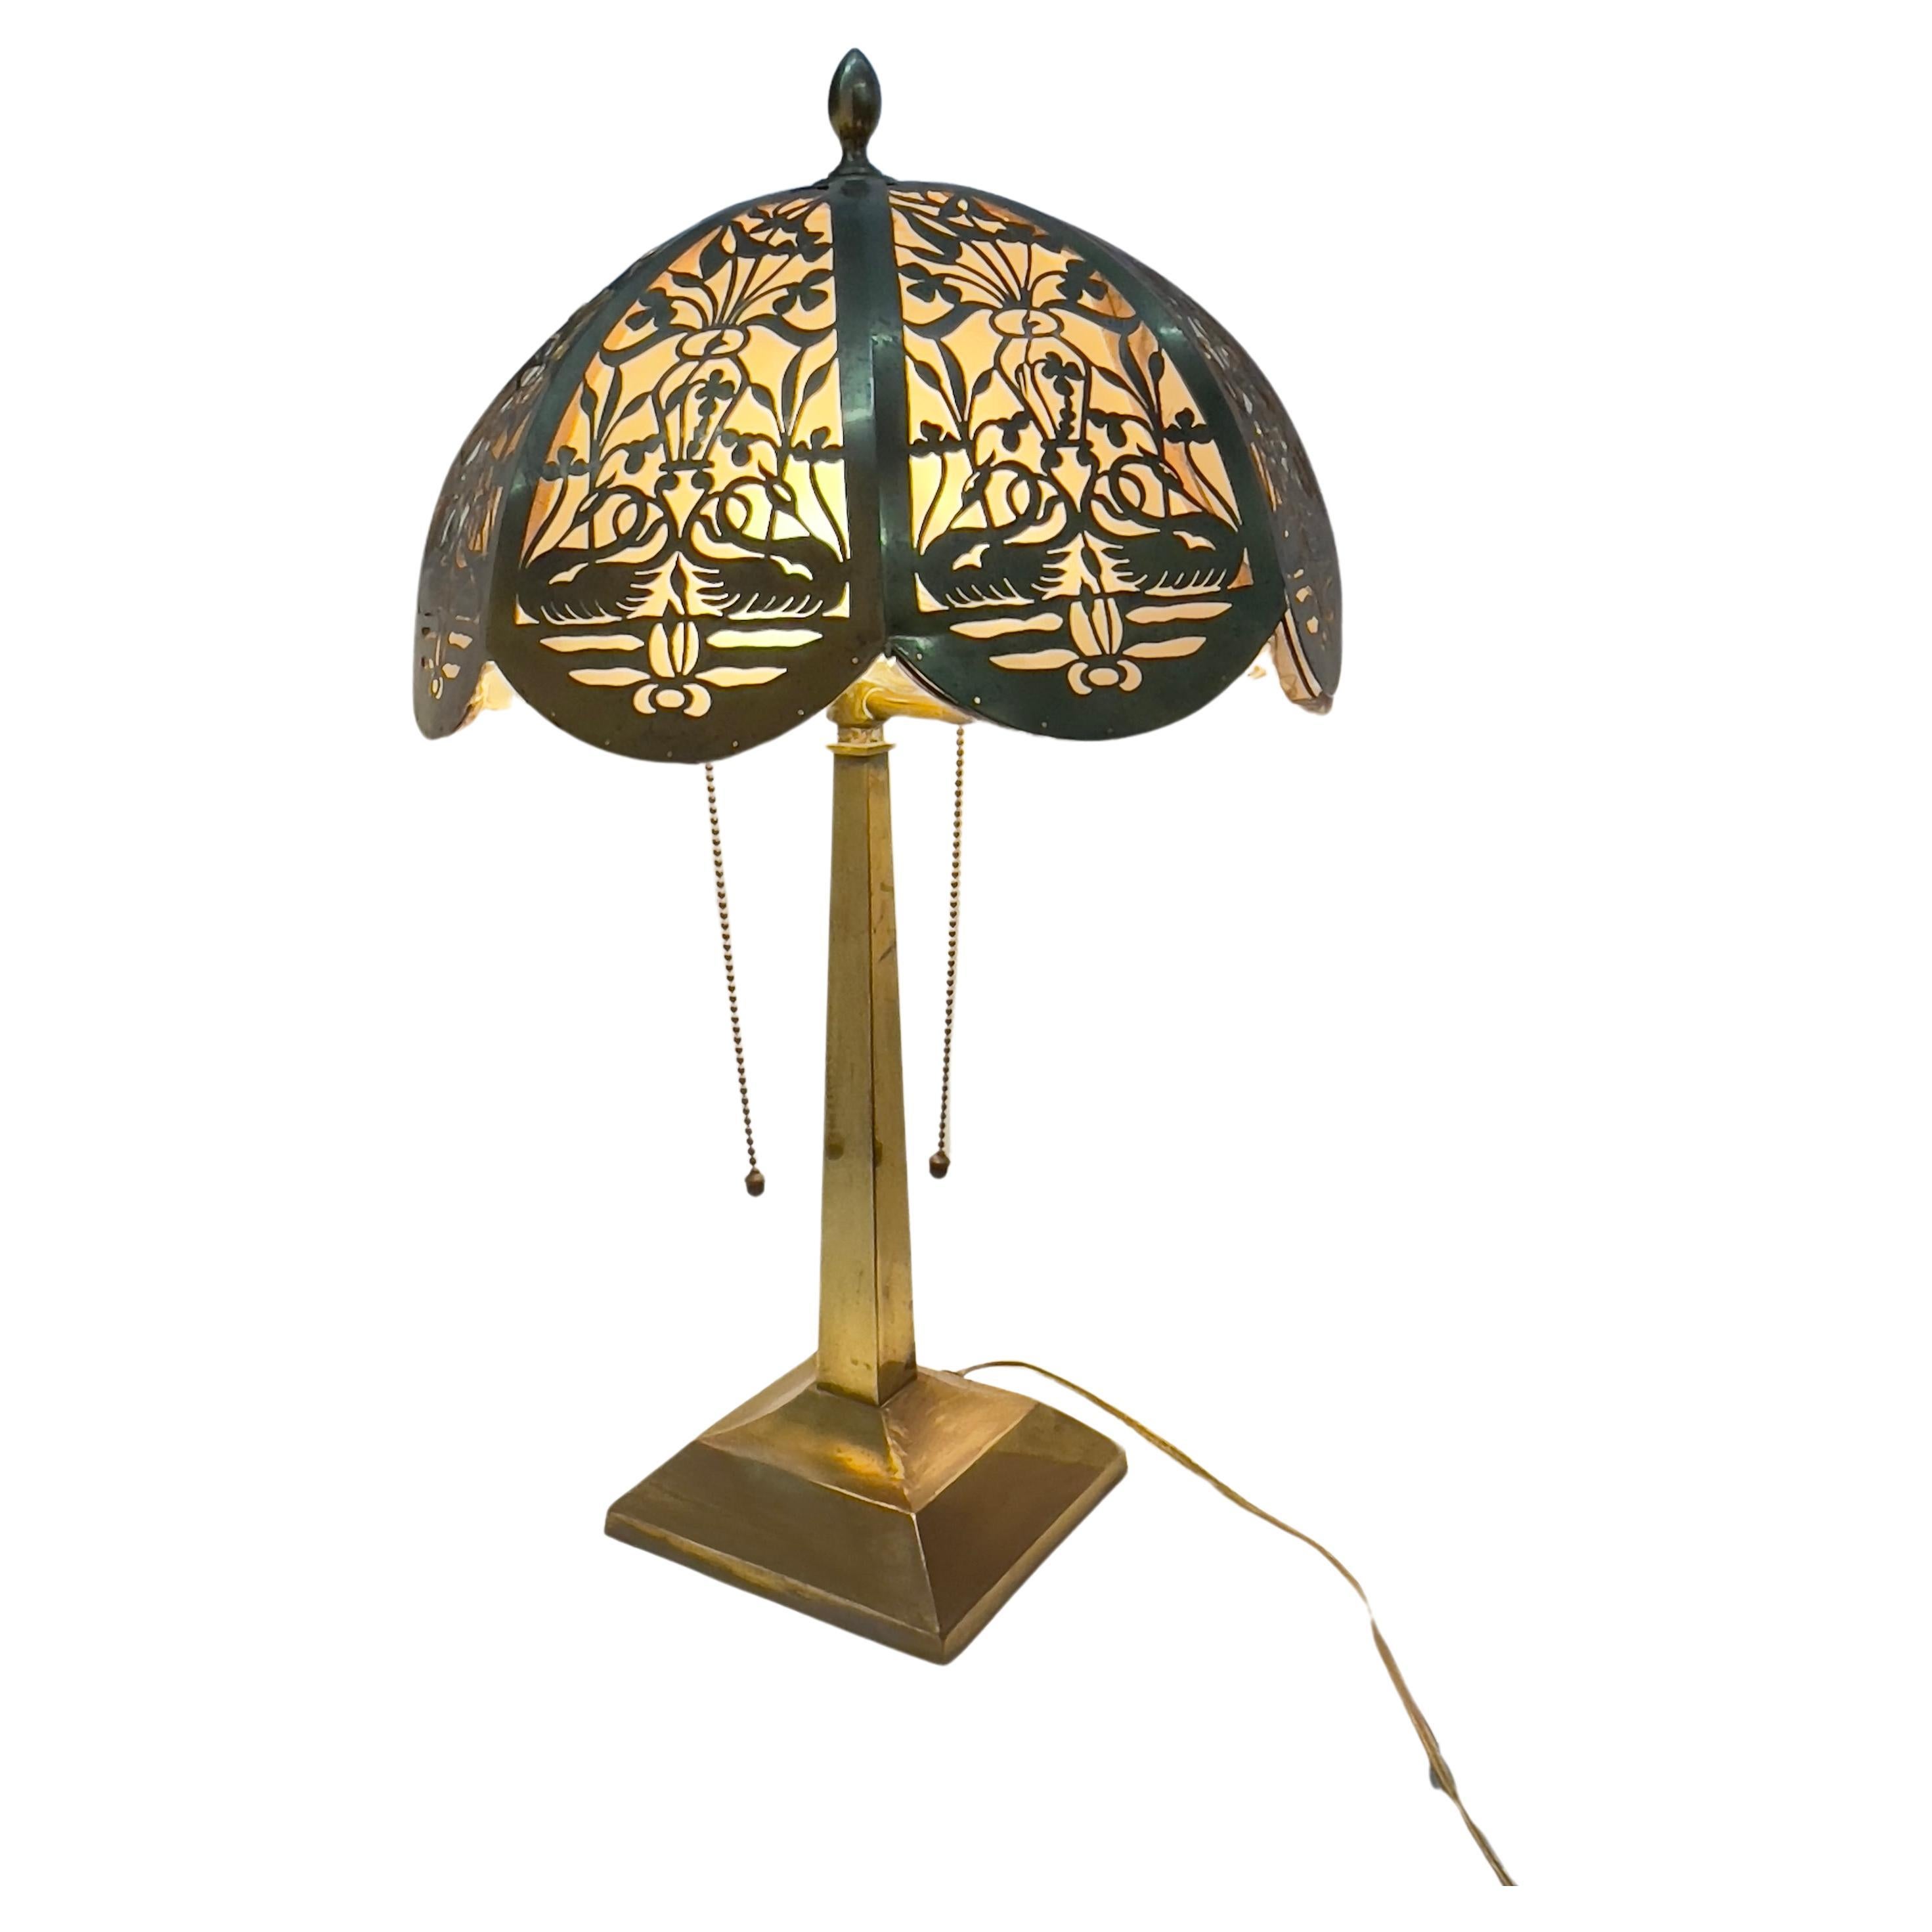 Circa 1920 Antique Brass Lamp with Reticulated Brass Lampshade (lampe en laiton antique avec abat-jour en laiton réticulé)